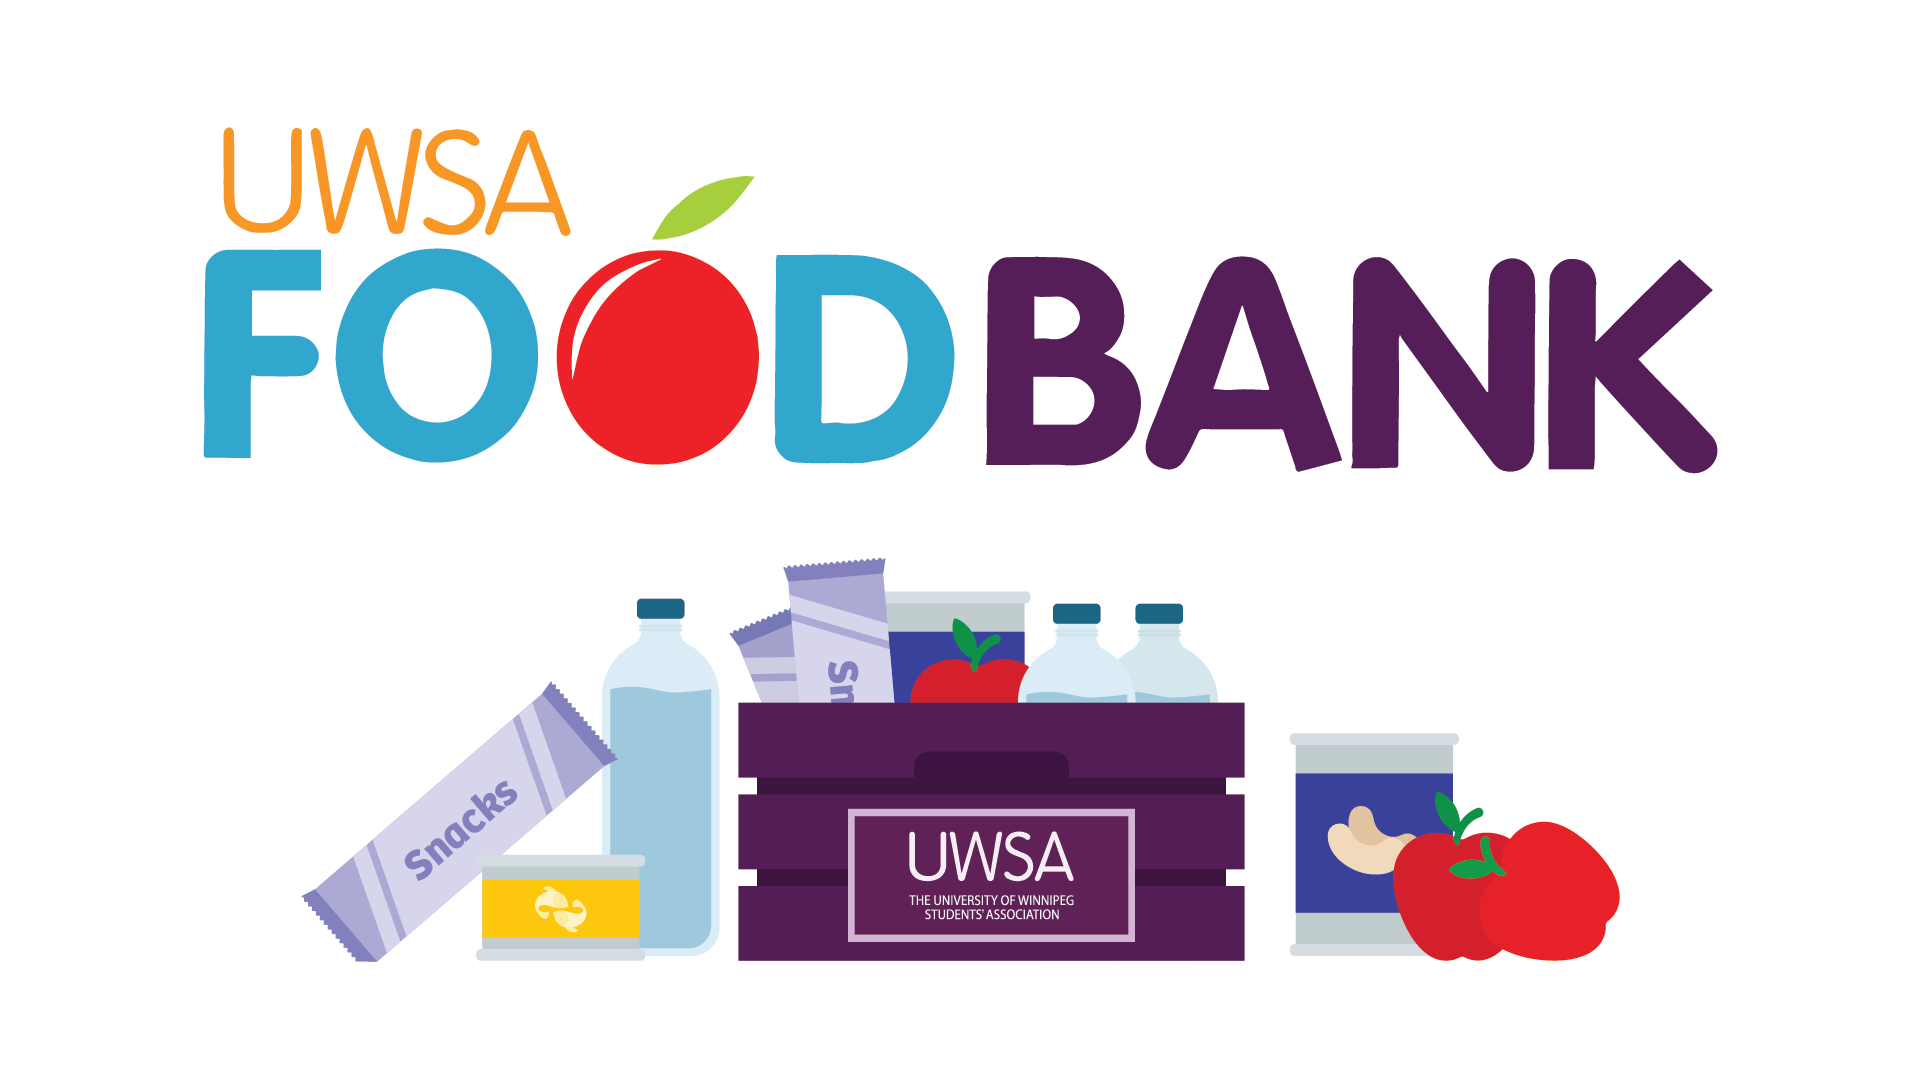 UWSA Food Bank